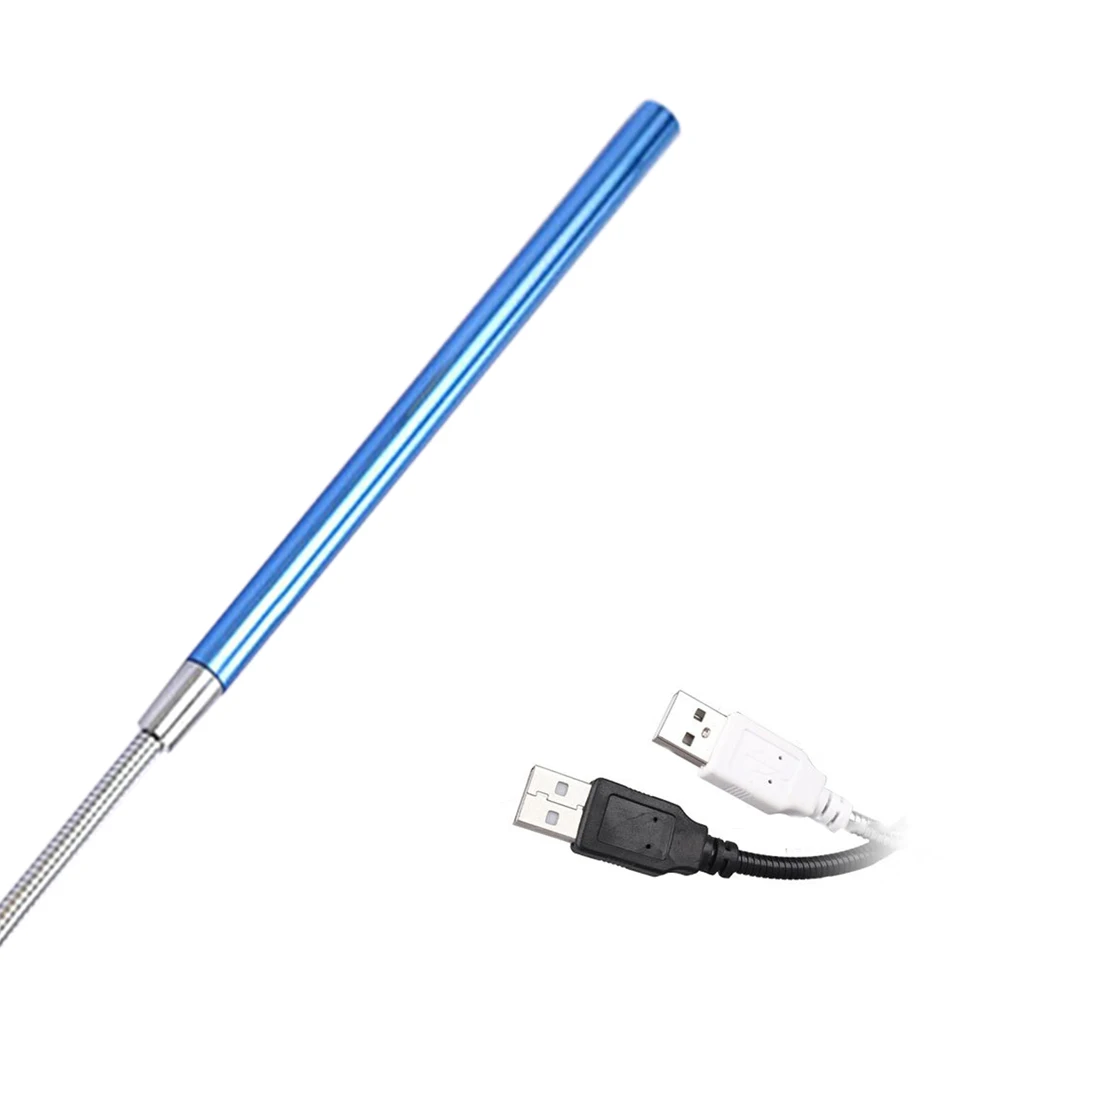 10 светодиодный USB светильник Гибкая лампа для чтения книг защита глаз для ноутбука ПК компьютера - Испускаемый цвет: Blue